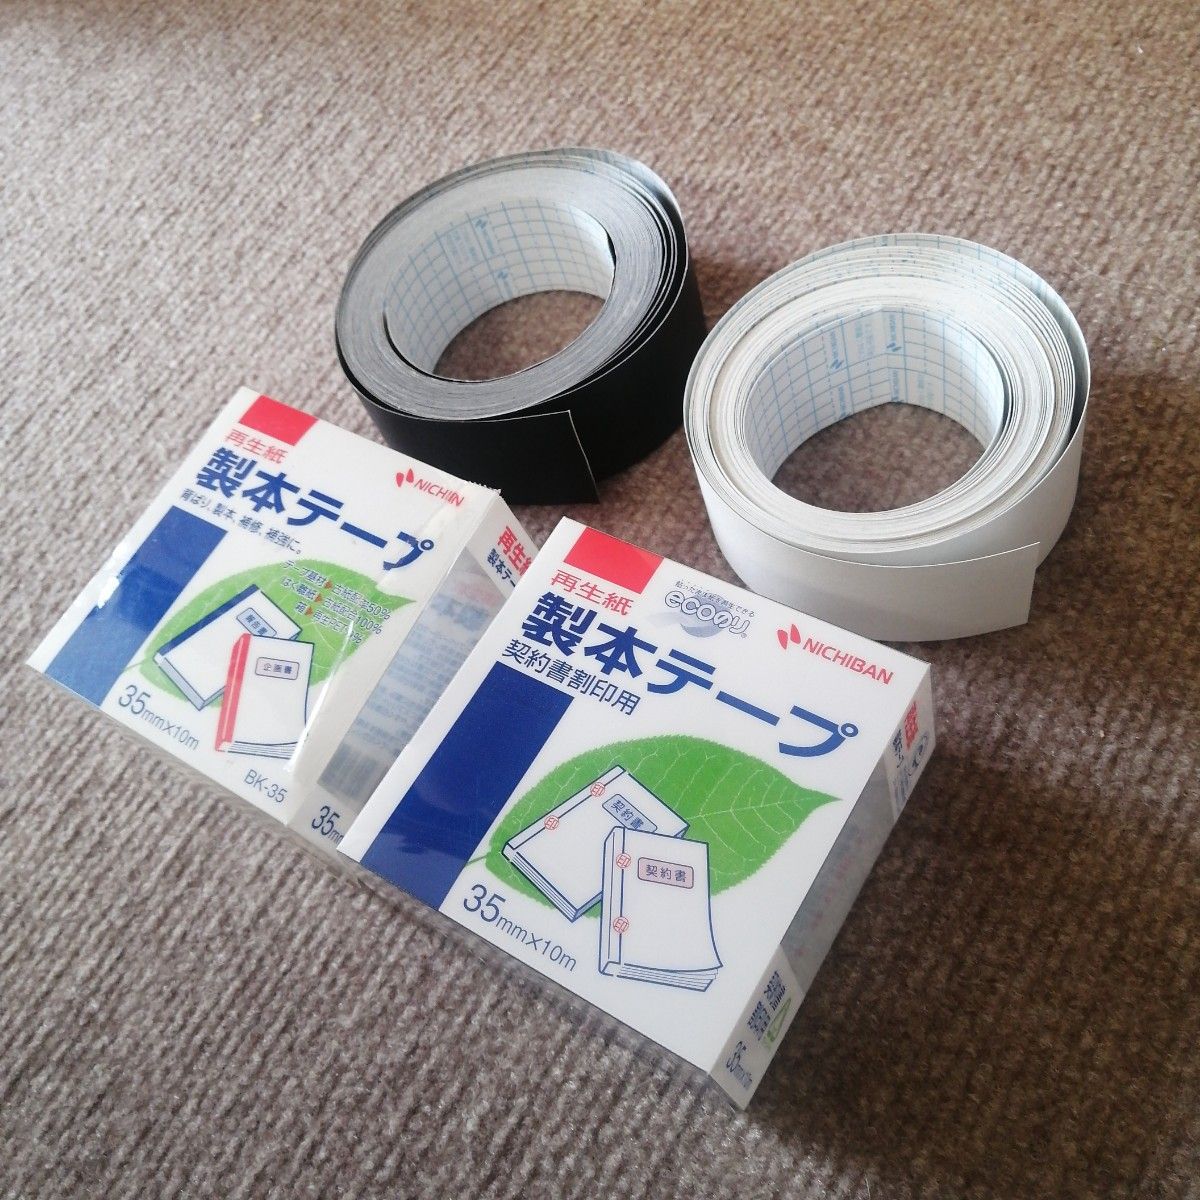 【数回使用】ニチバン 再生紙製本テープ ロール 35mmx10m BK-35 黒白セット